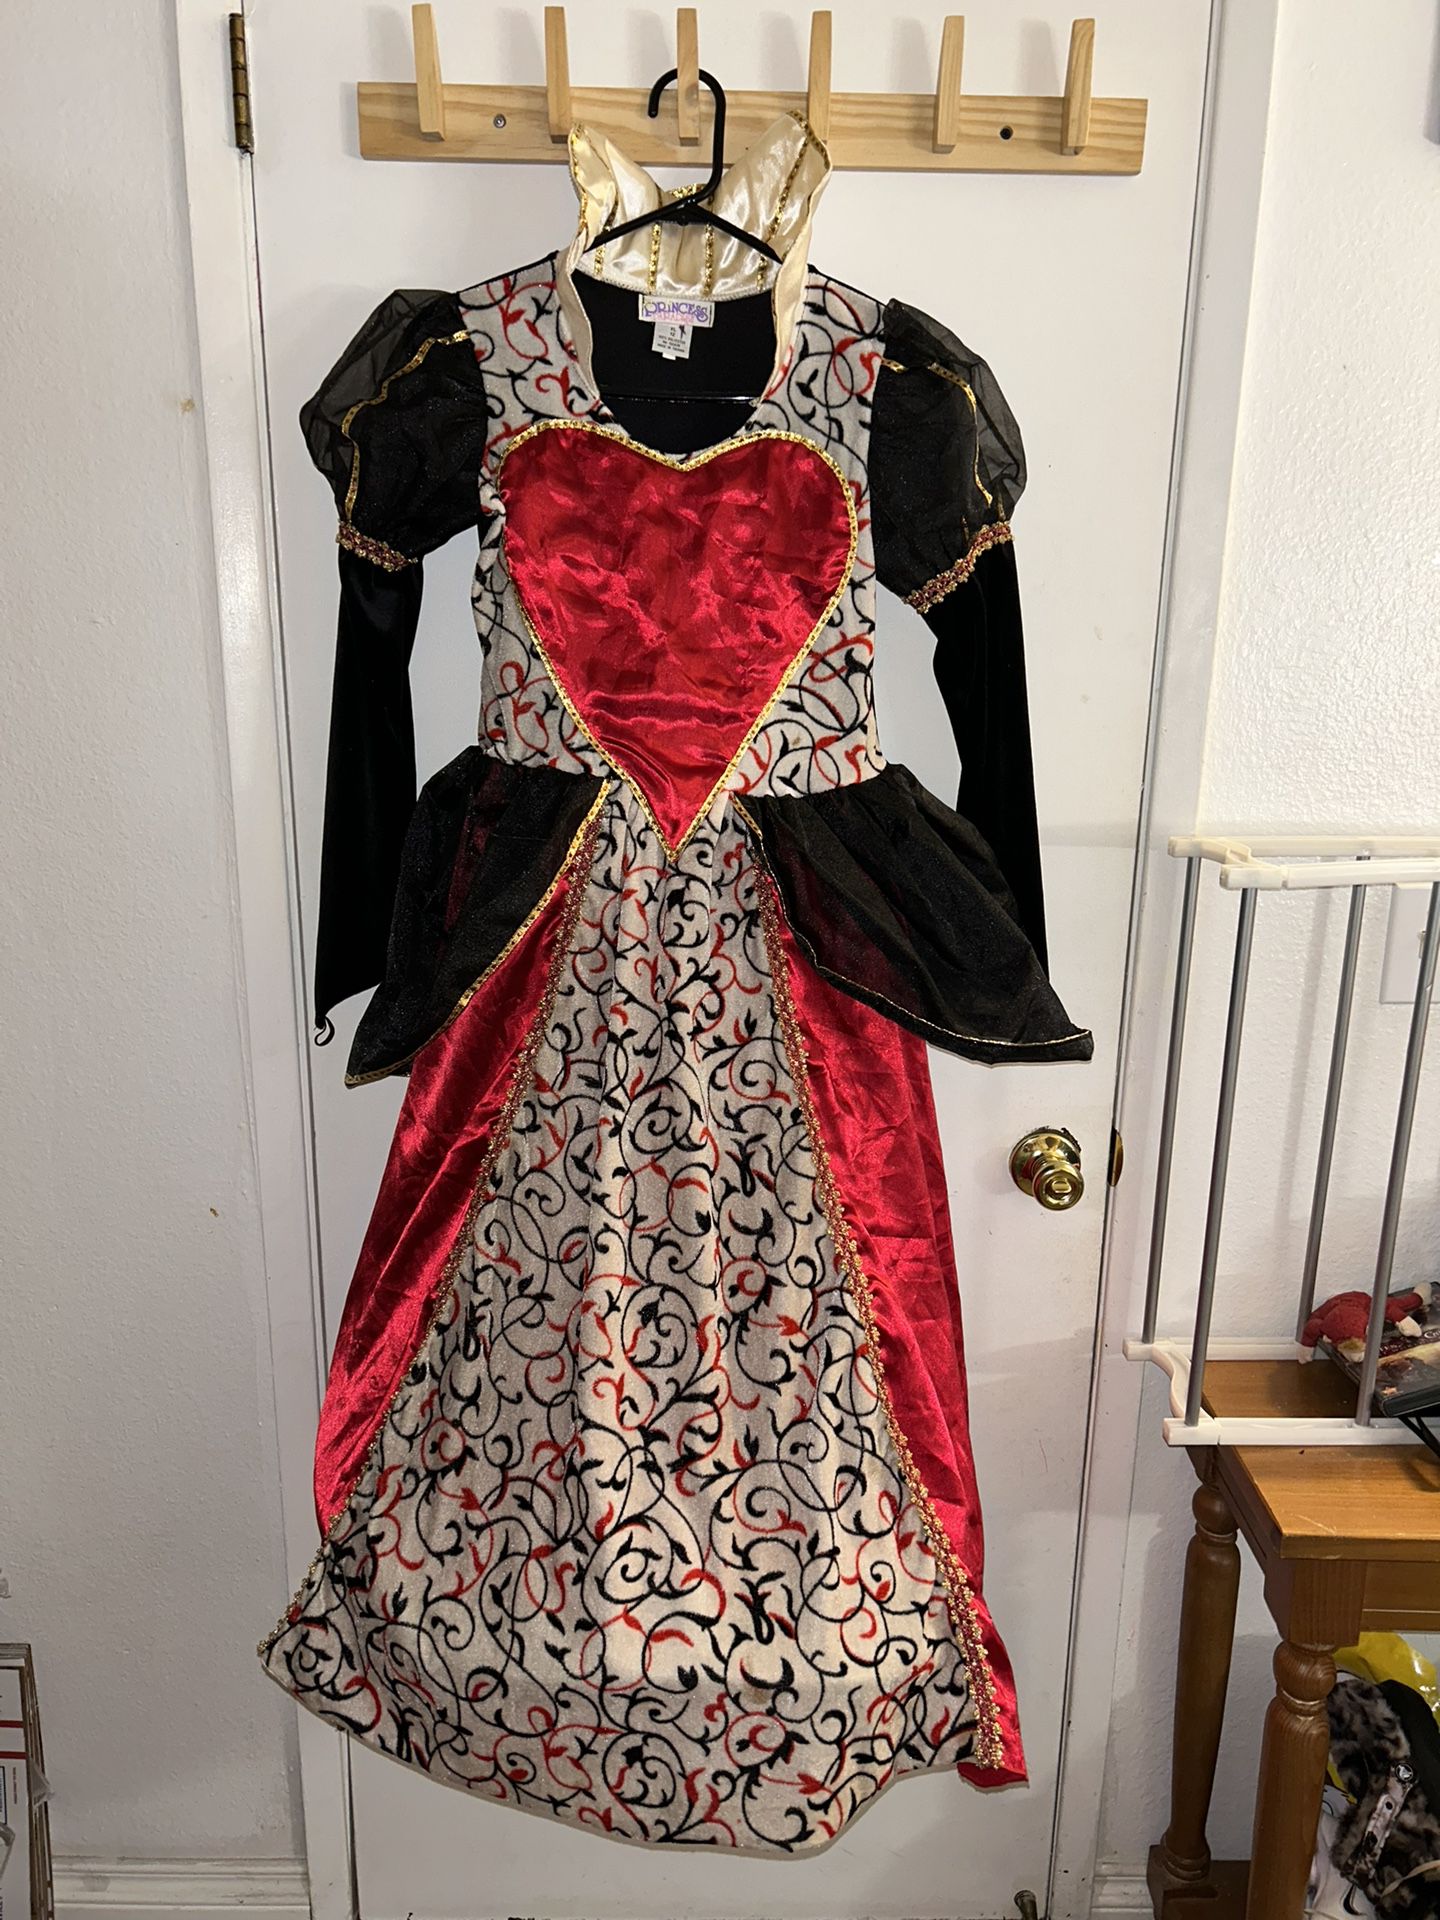 Princess Paradise Gown Dress Up Halloween Costume Girls Queen Of Heart Sz XL 12